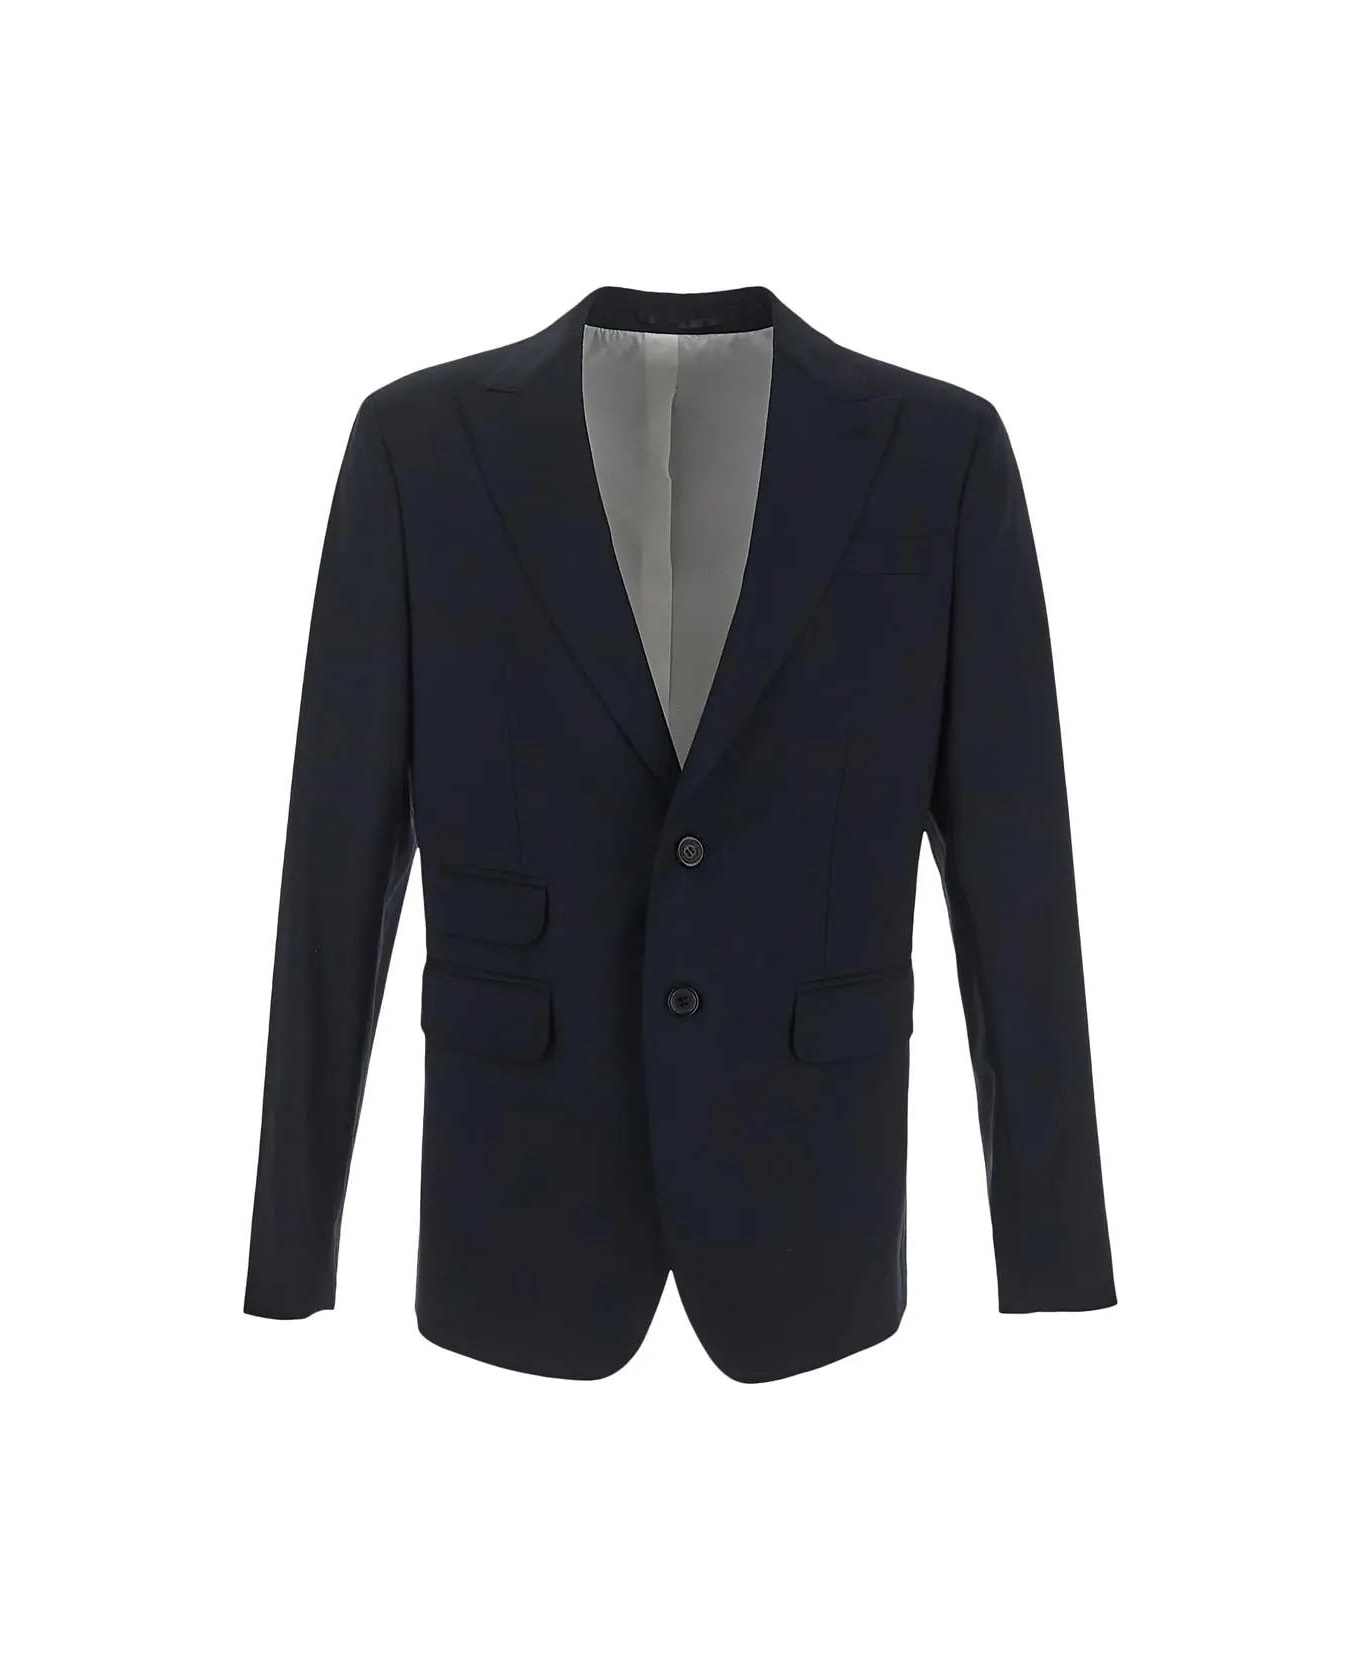 Dsquared2 London Suit - Navy blue